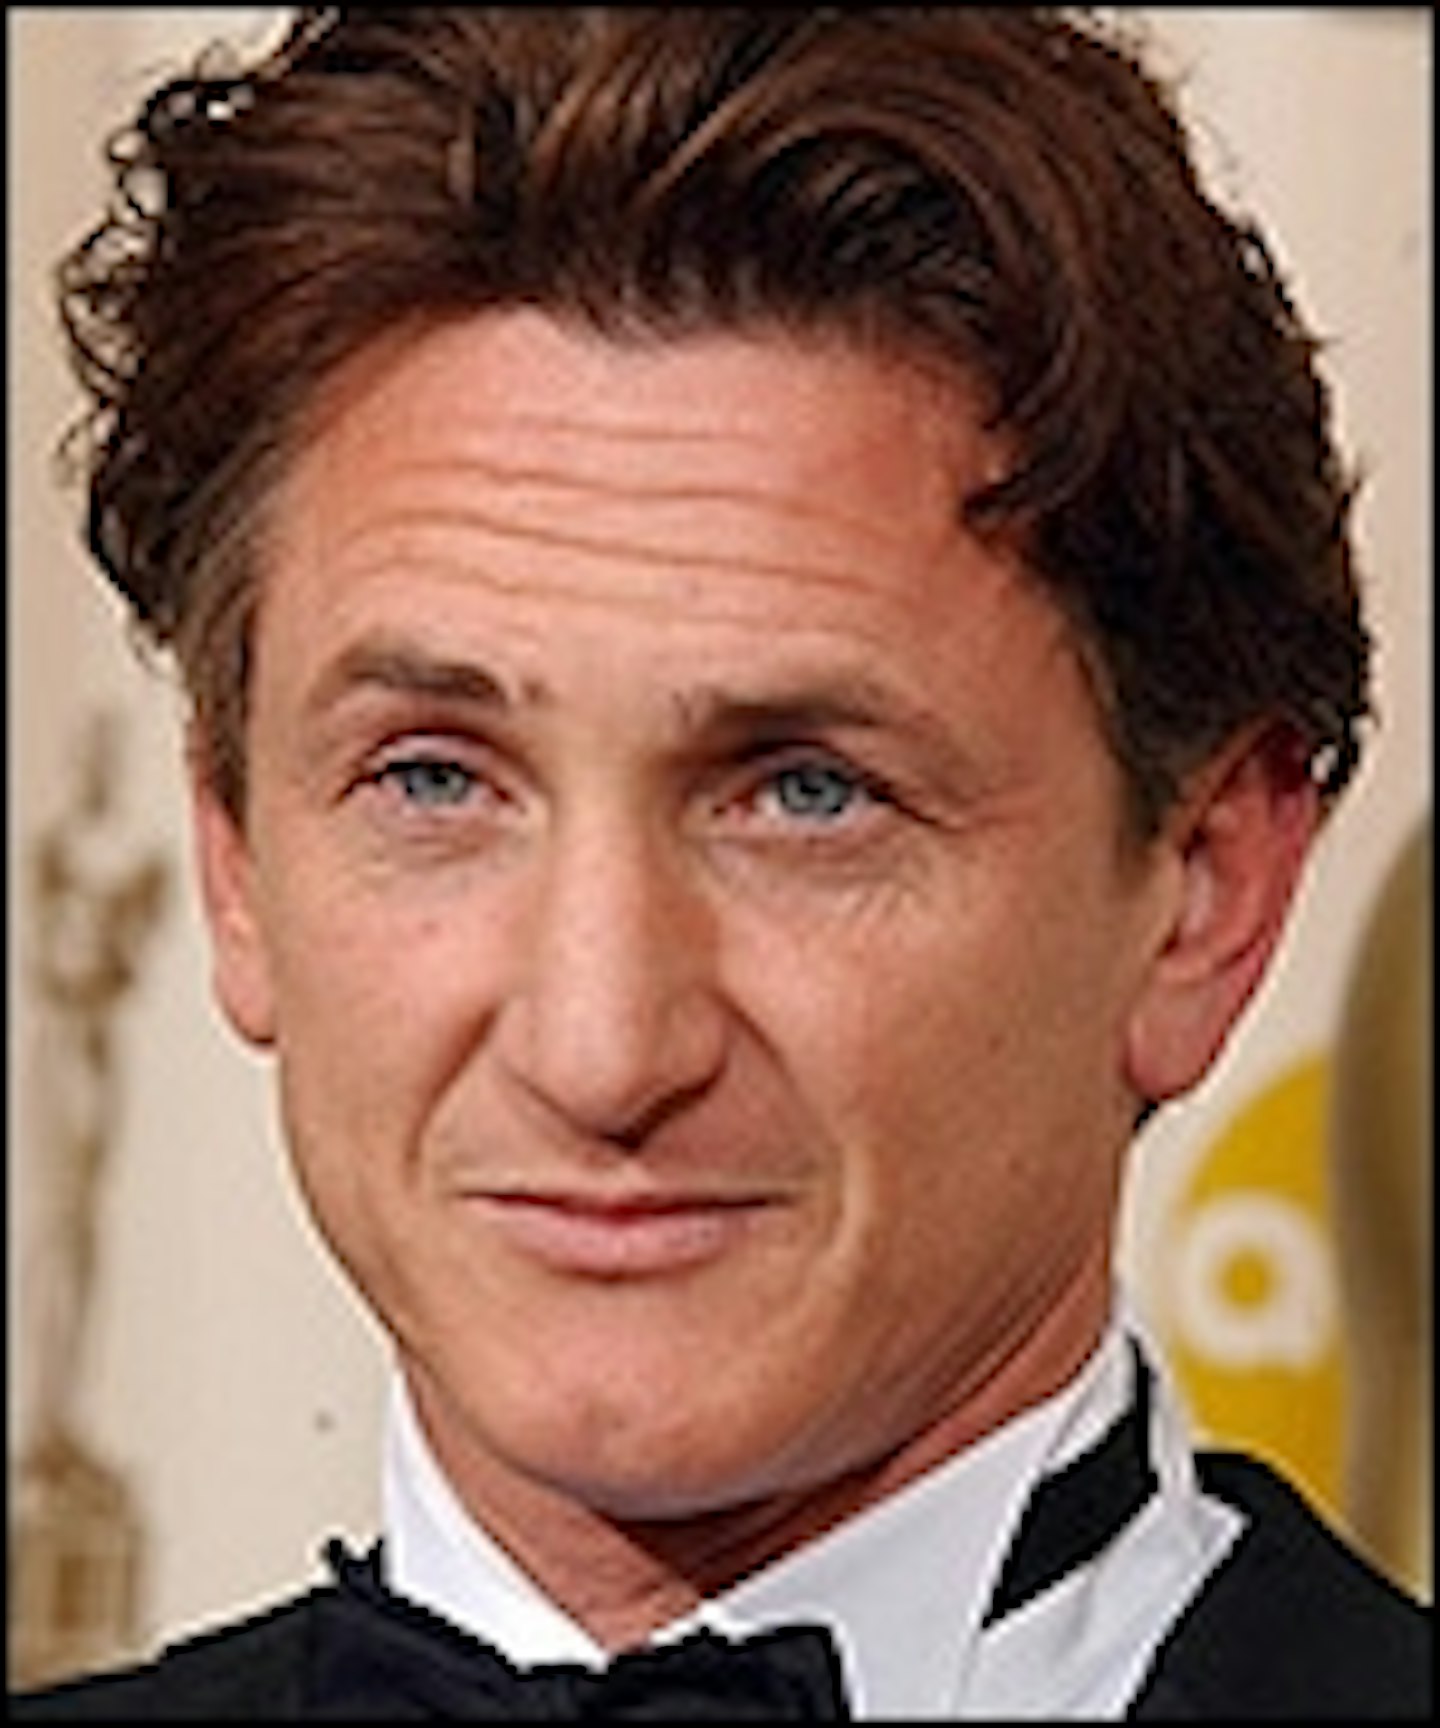 Sean Penn Hitting The Waves Again?